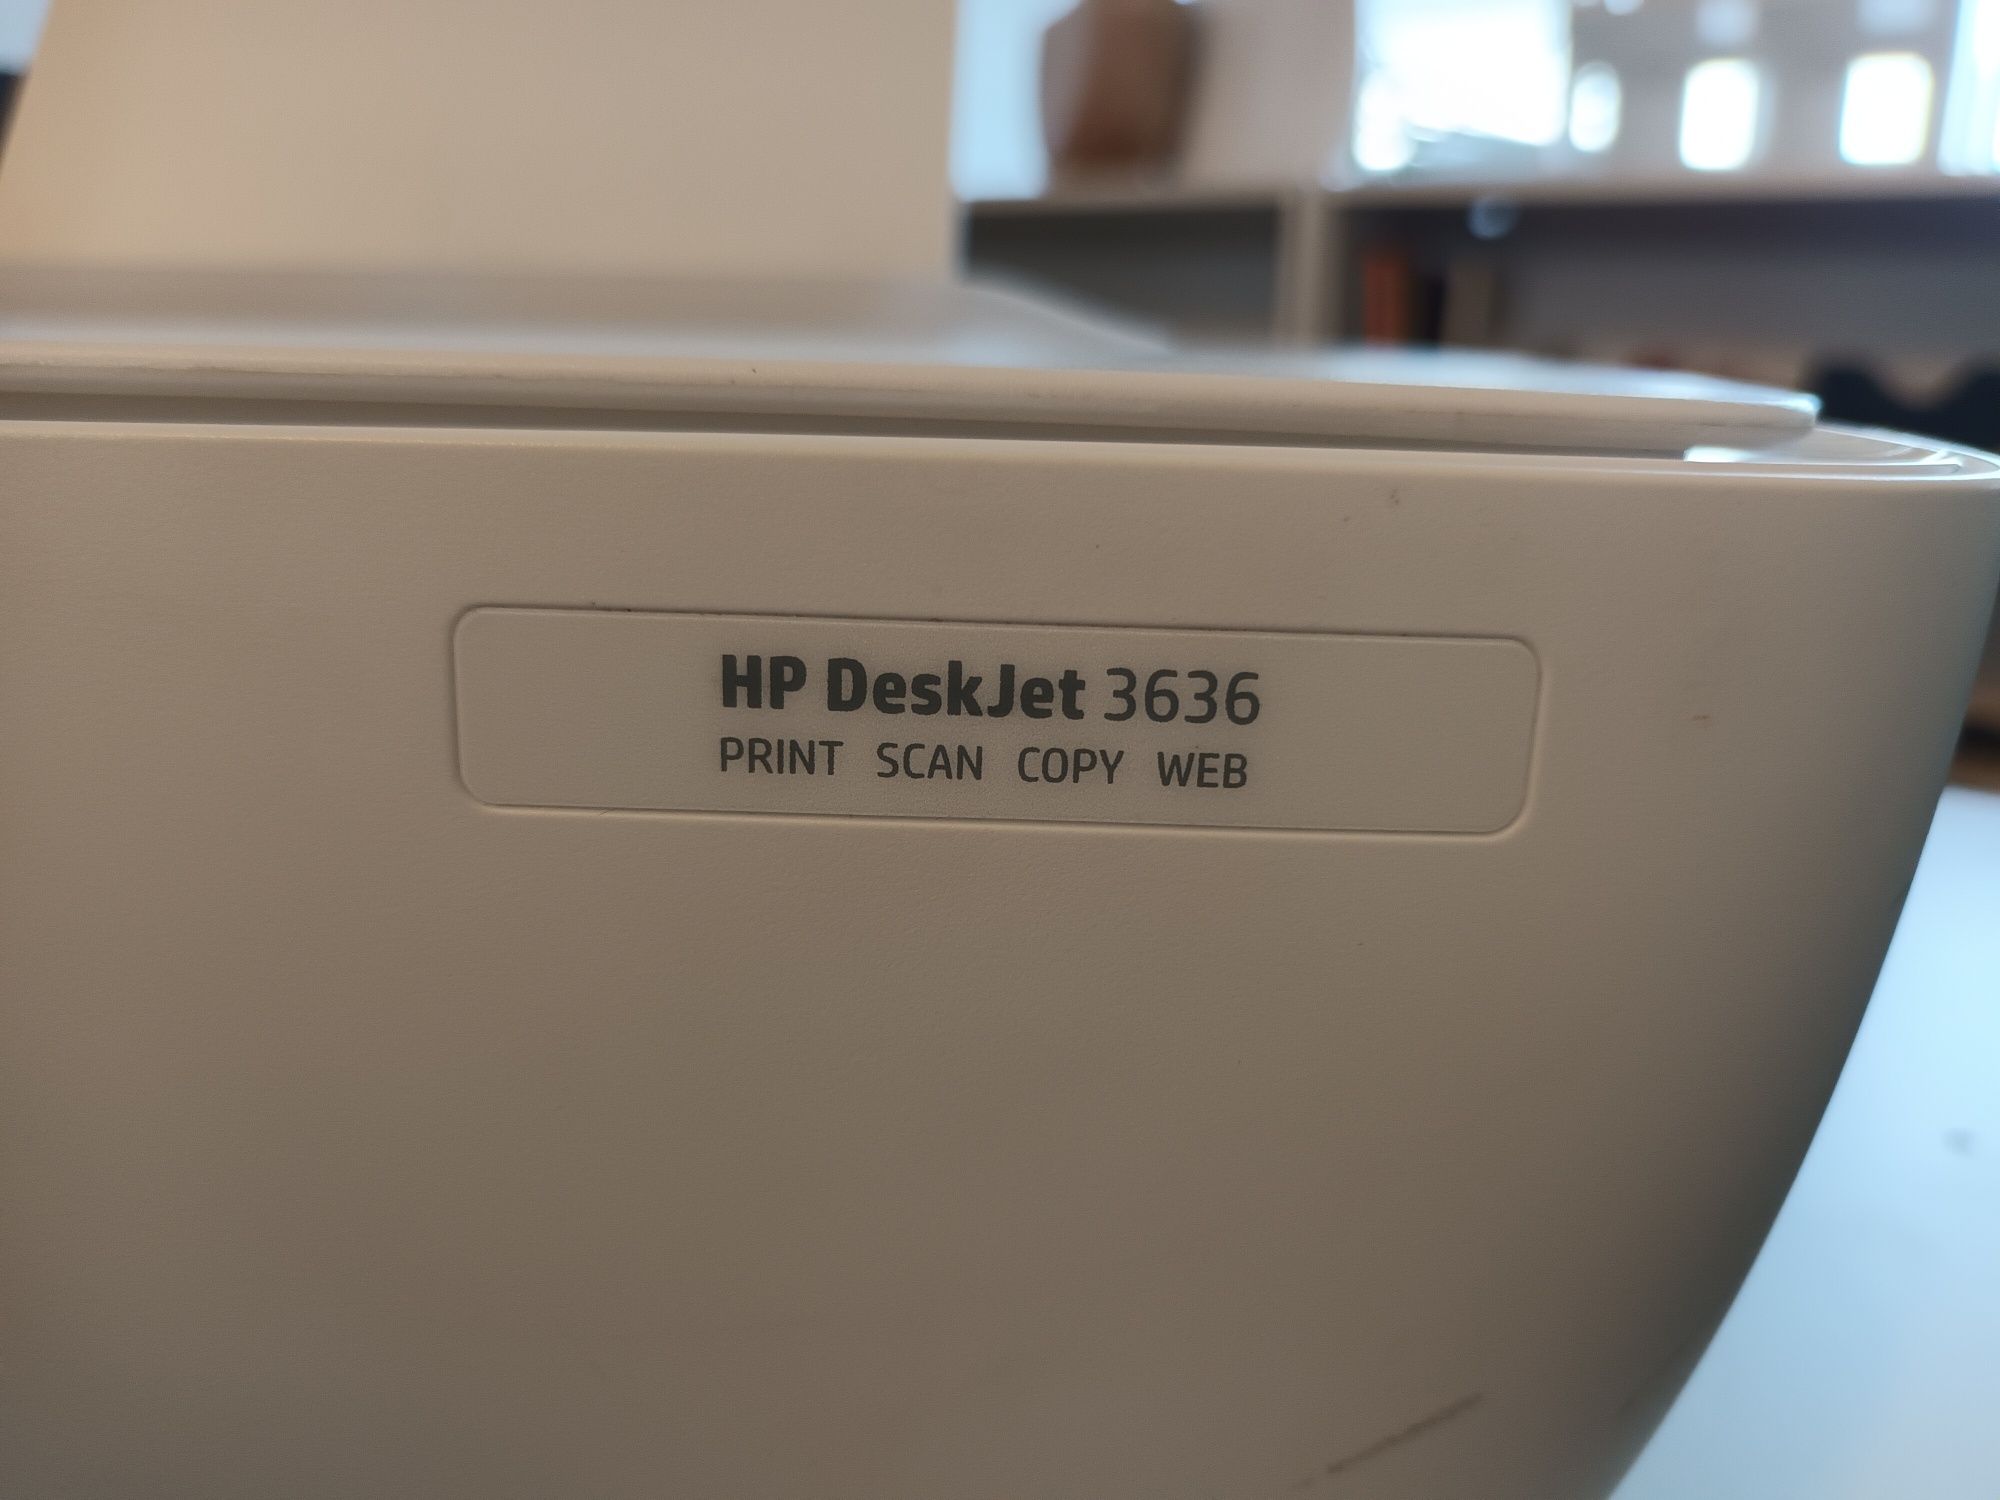 Impressora e scnner HP Deskjet 3636